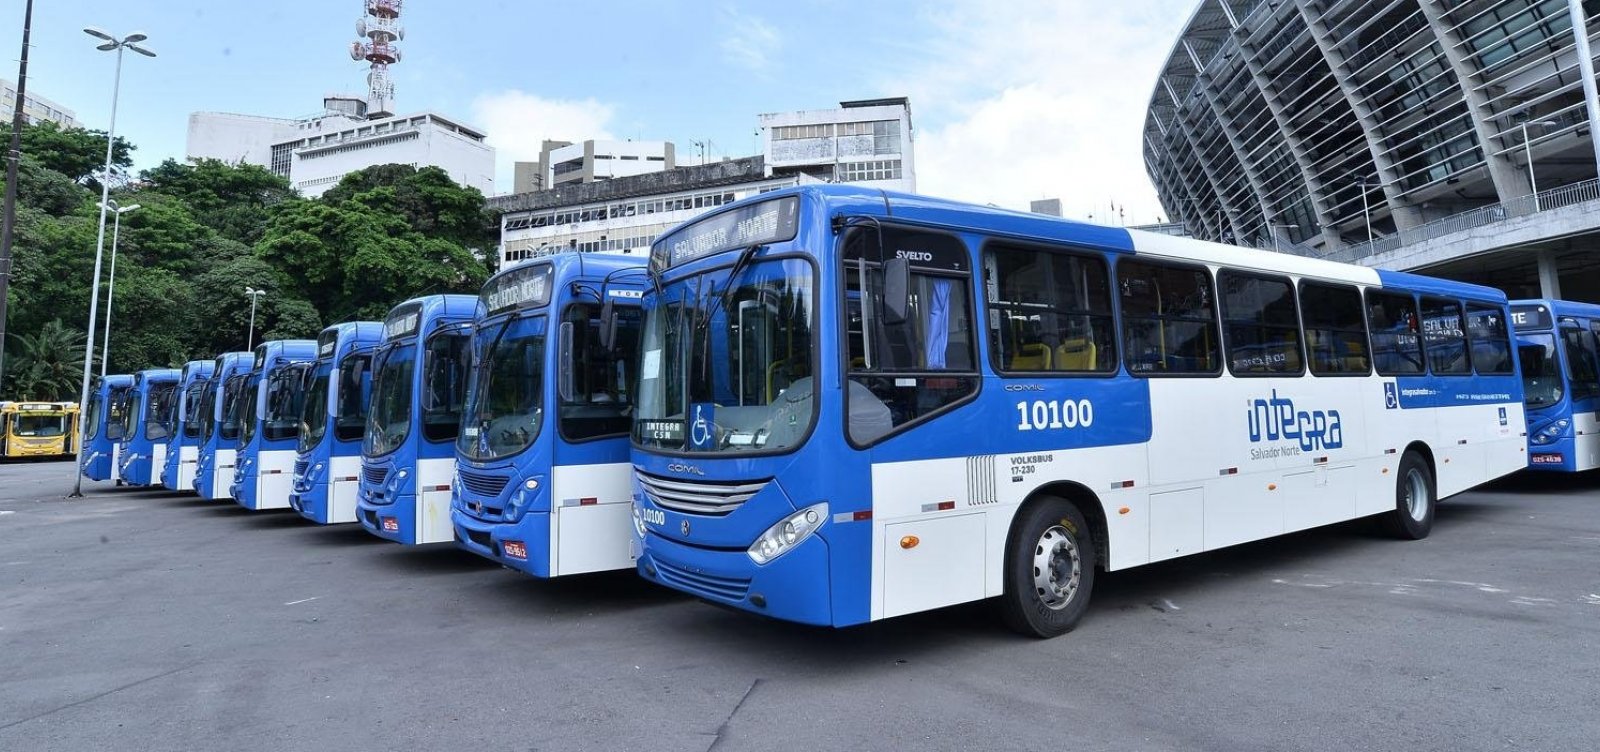 Horário de funcionamento dos transportes públicos é ampliado durante toque de recolher em Salvador 